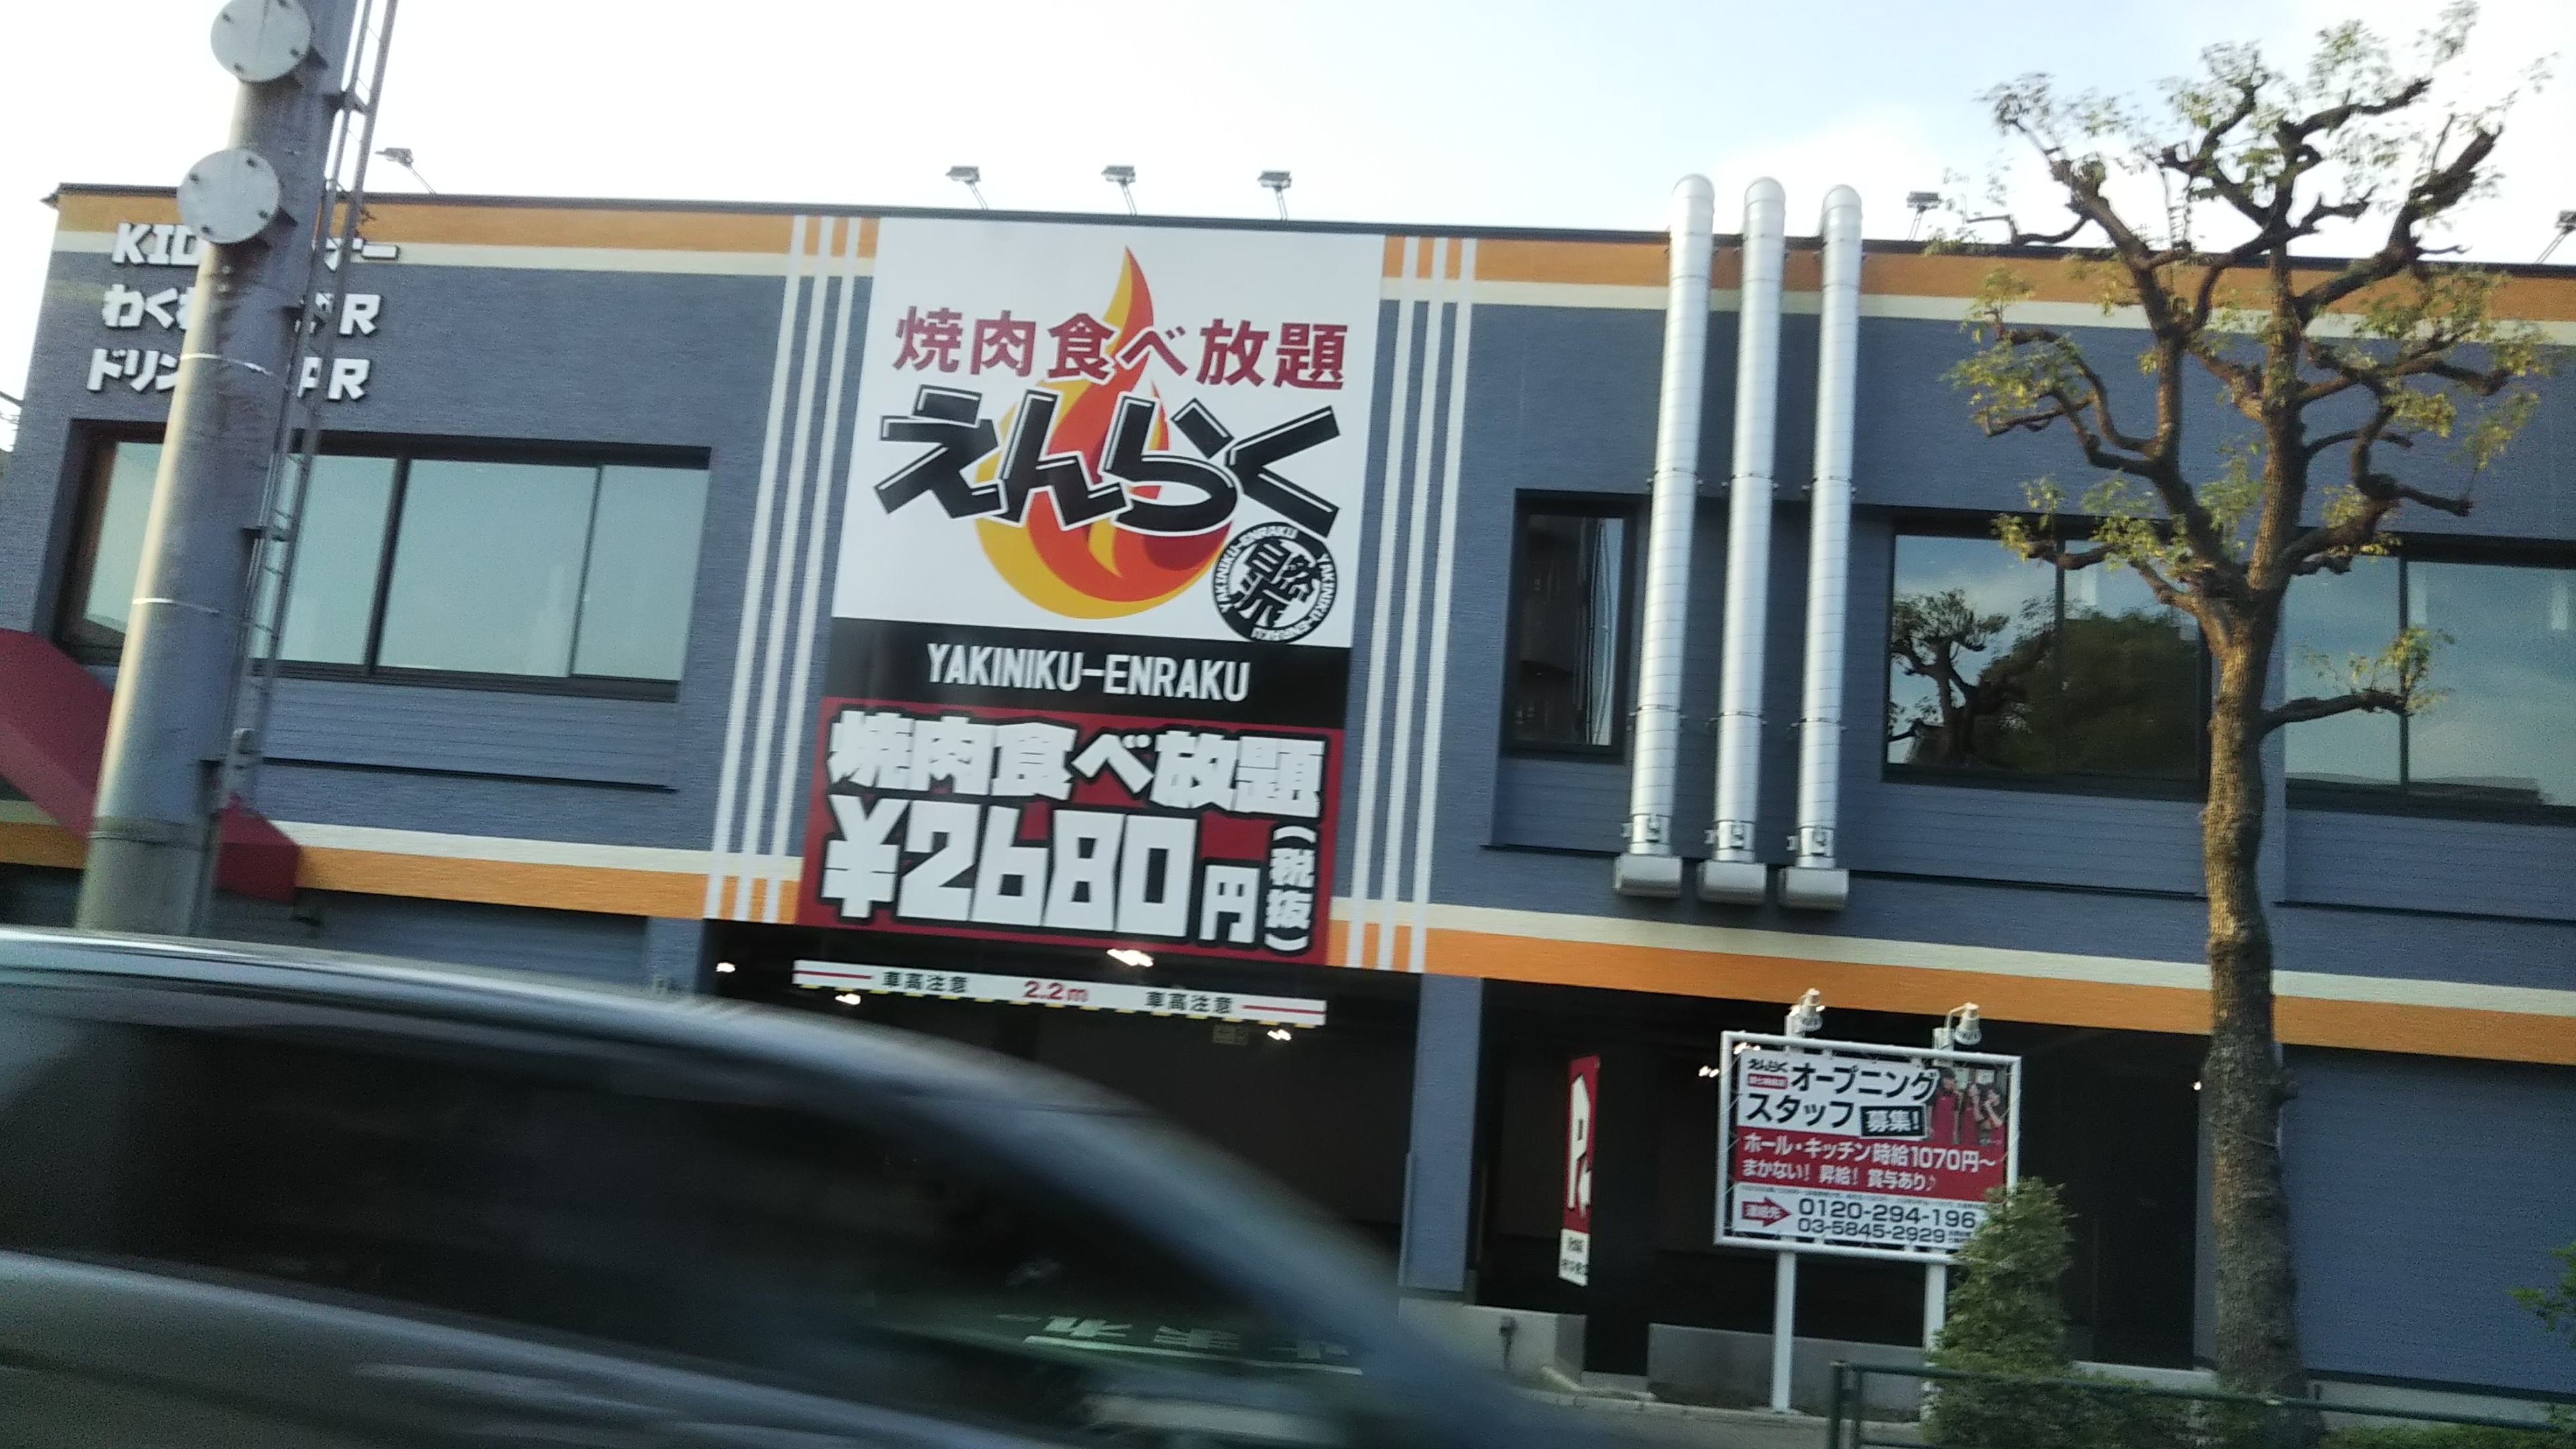 えんらく 環七梅島店 焼肉食べ放題のお店が8 29にオープンします ぼくのまちまで